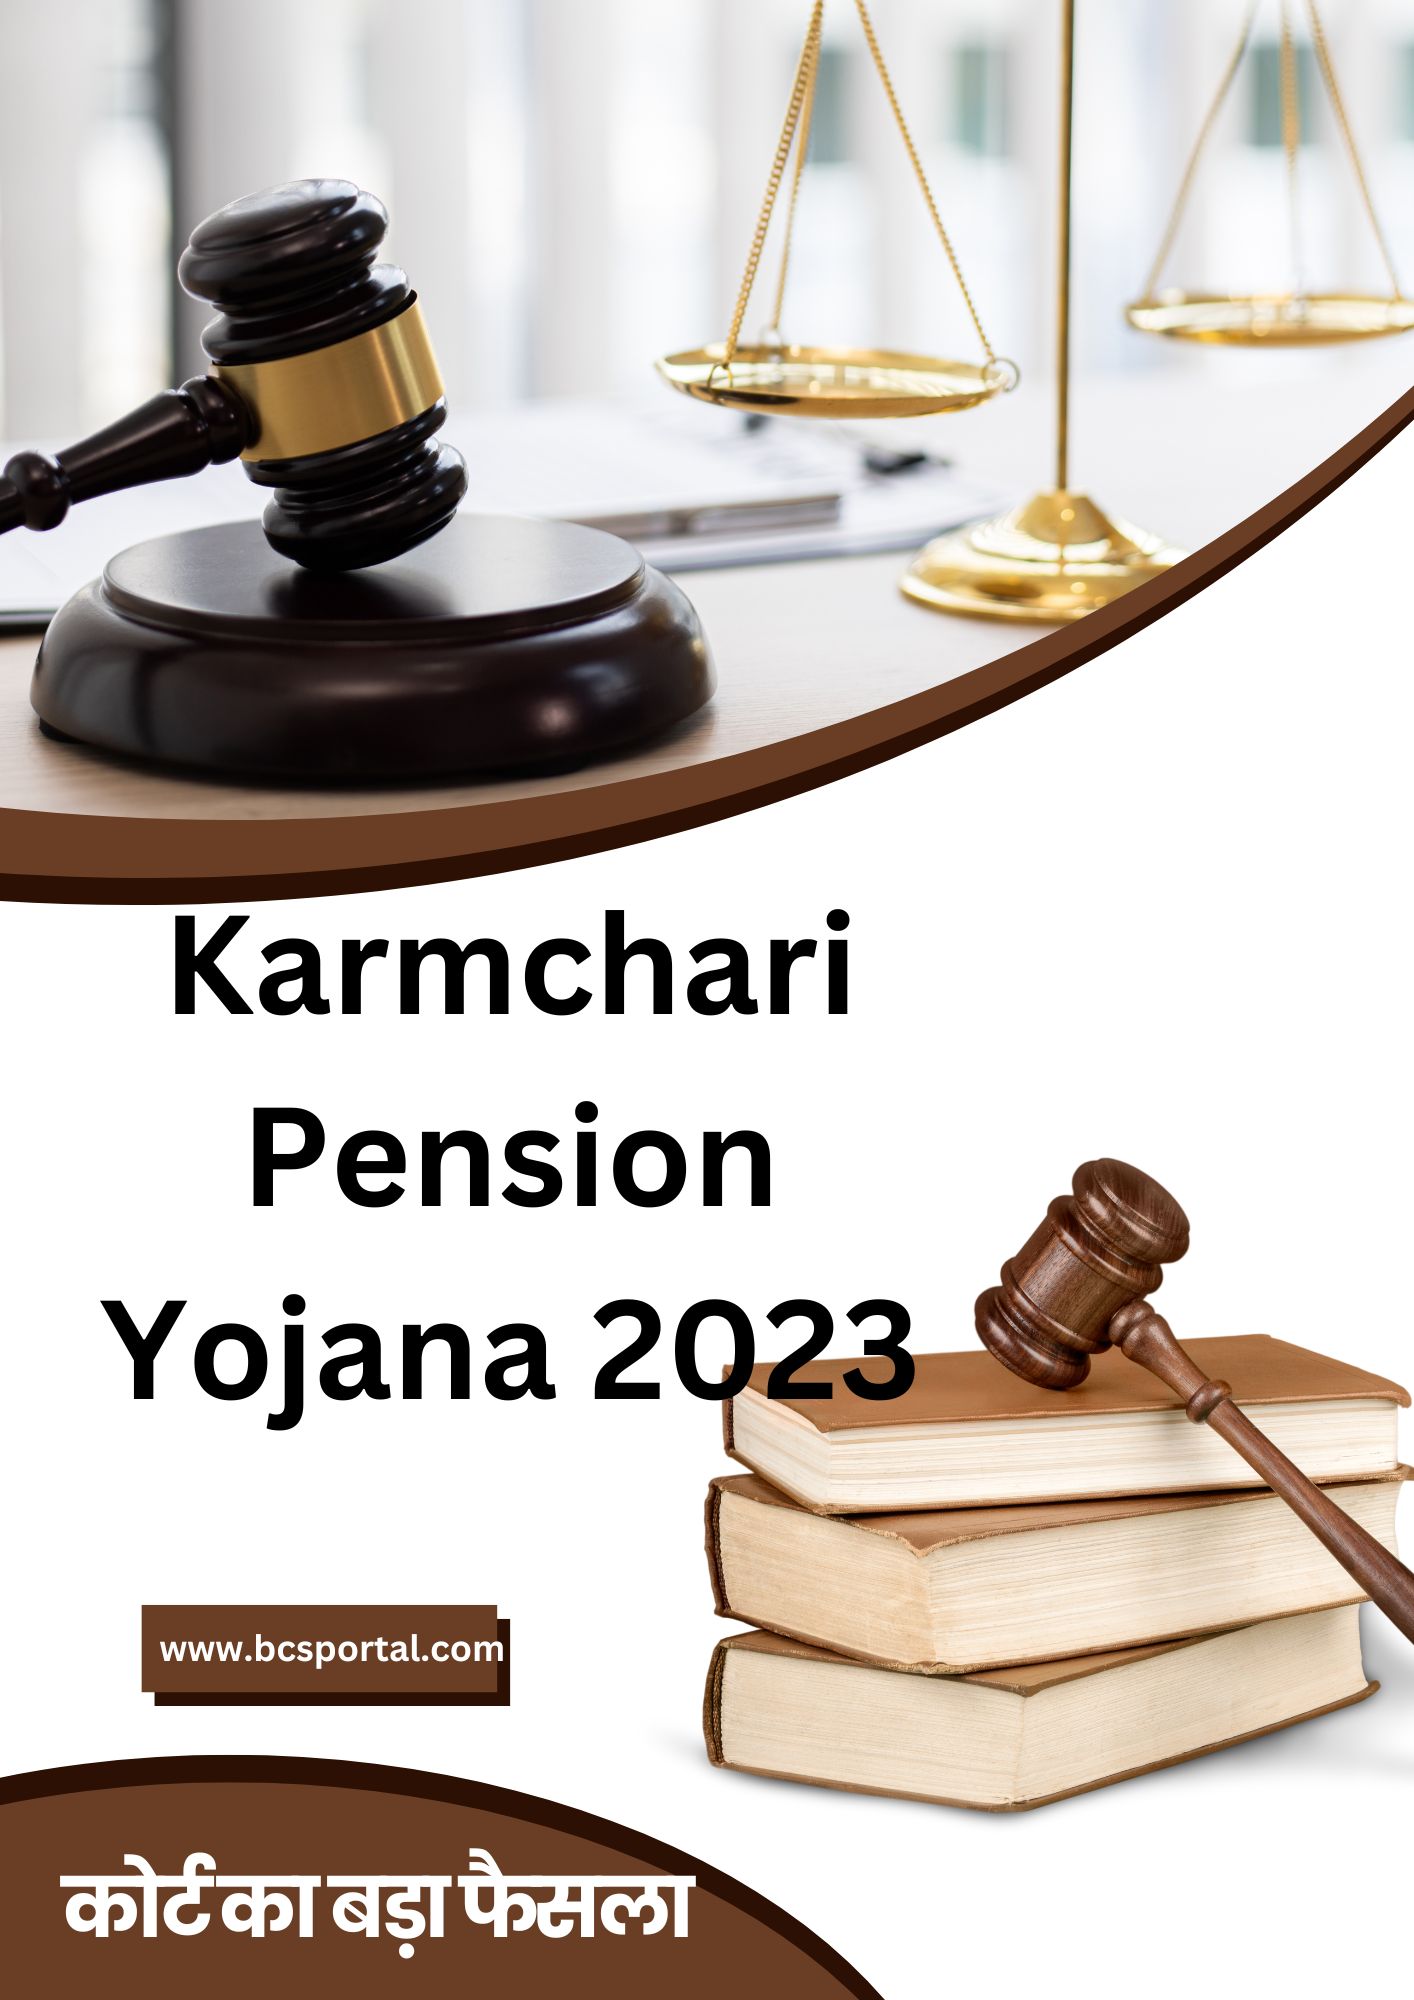 Karmchari Pension Yojana 2023